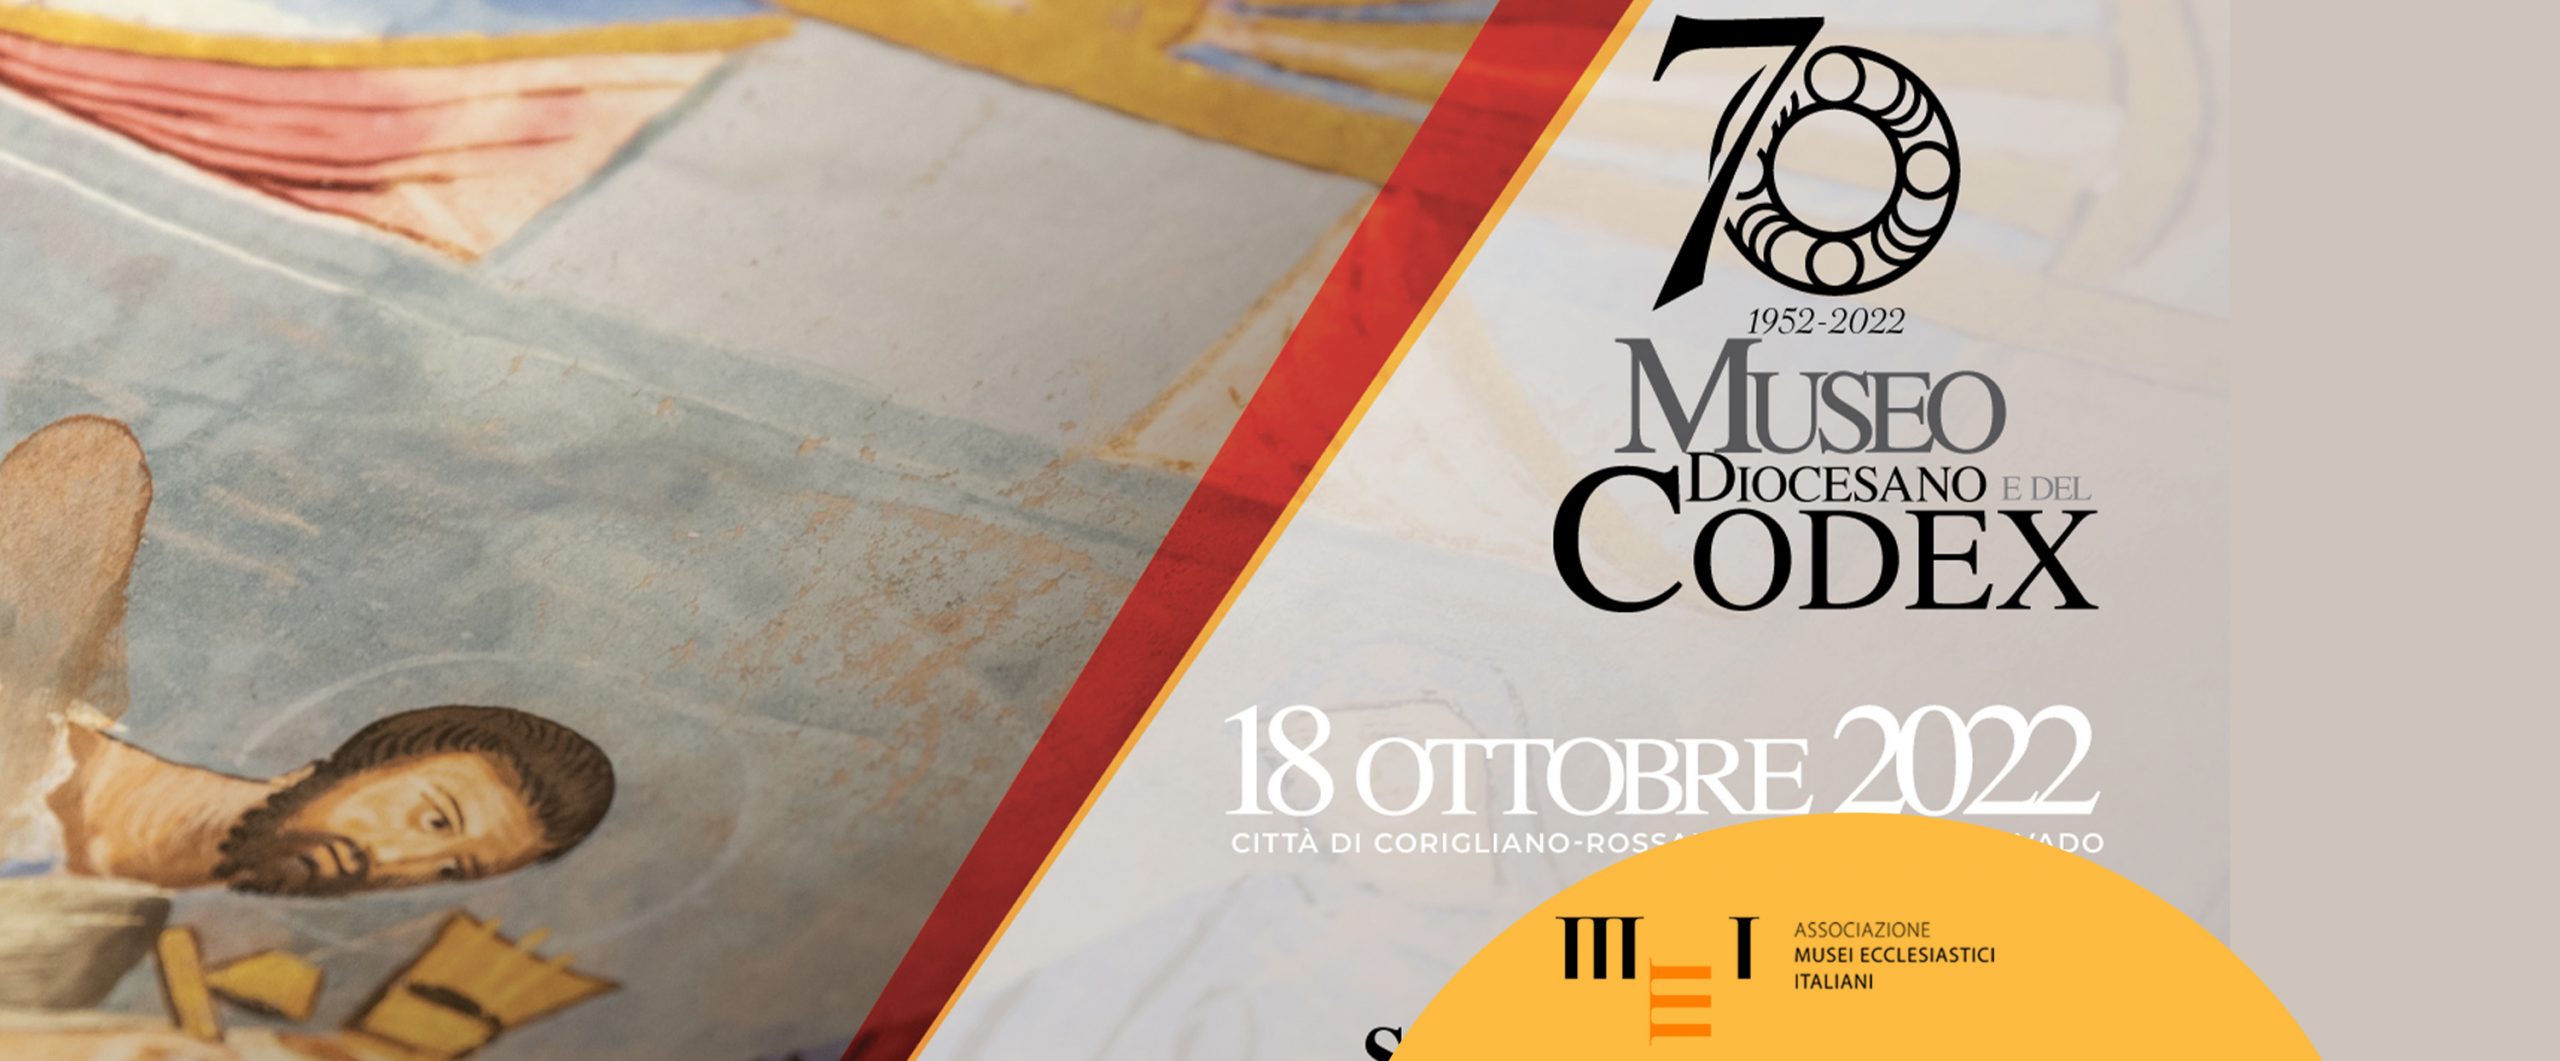 I 70 anni del Museo Diocesano e del Codex, Corigliano-Rossano, 18 ottobre 2022